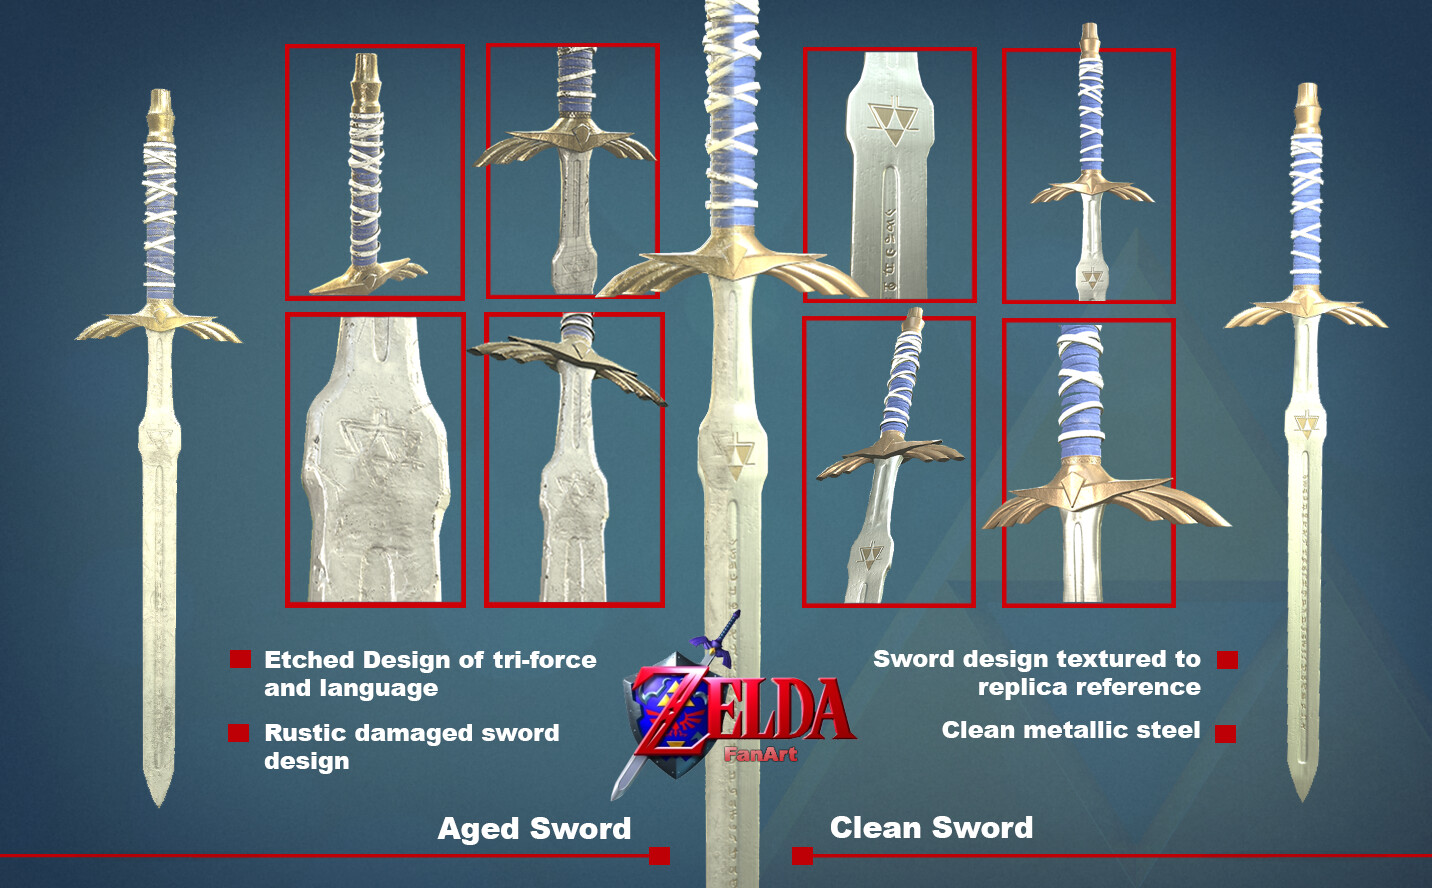 ArtStation - Master Sword - The Legend of Zelda : Breath of the Wild  (Fanart)